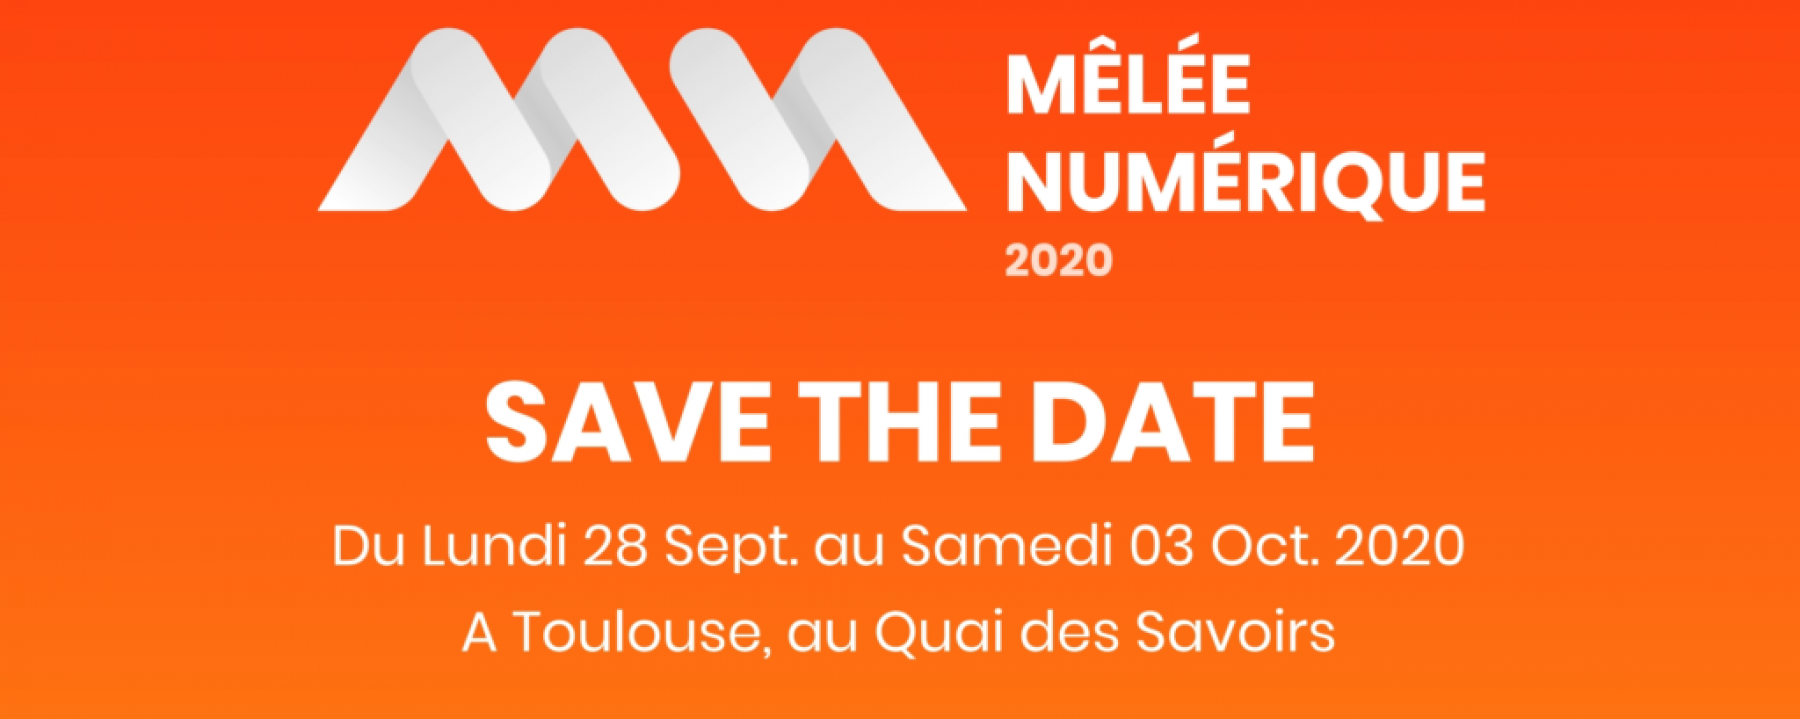 Festival La Mêlée Numérique 2020, du 28 septembre au 3 octobre 2020, organisé par La Mêlée